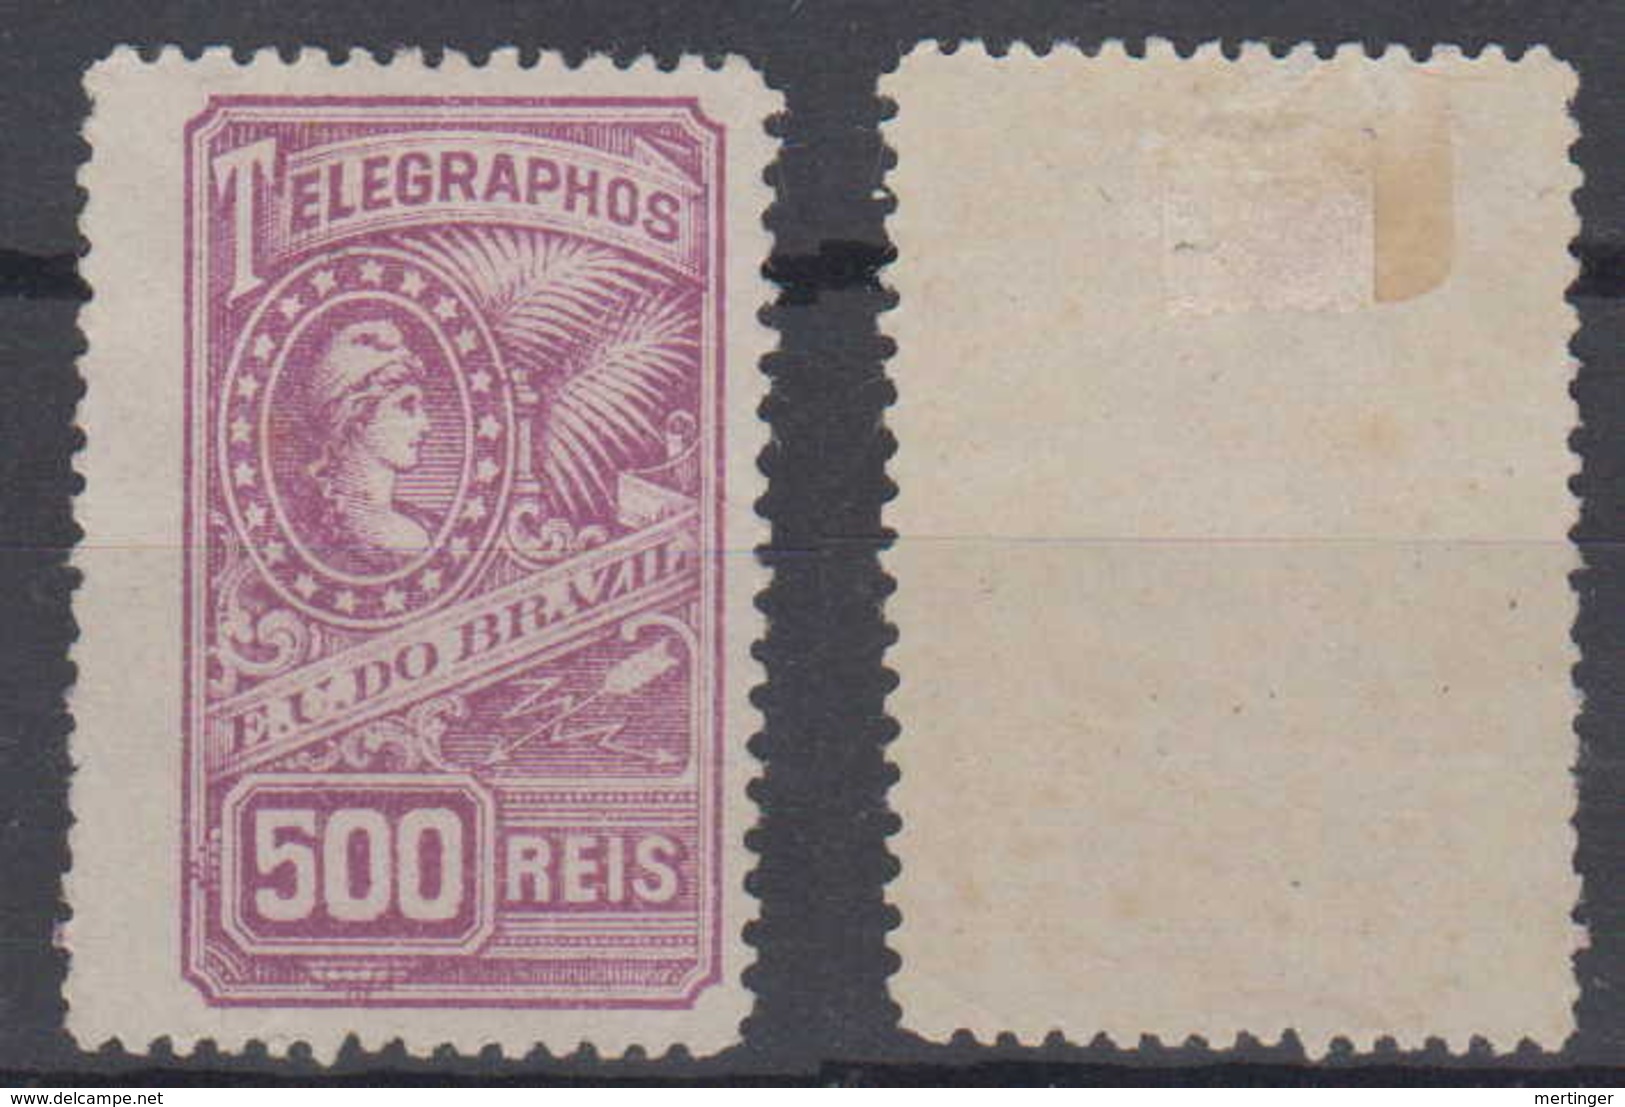 Brazil Brasil Telegrafo Telegraph 1899 500R * Mint - Telegraafzegels